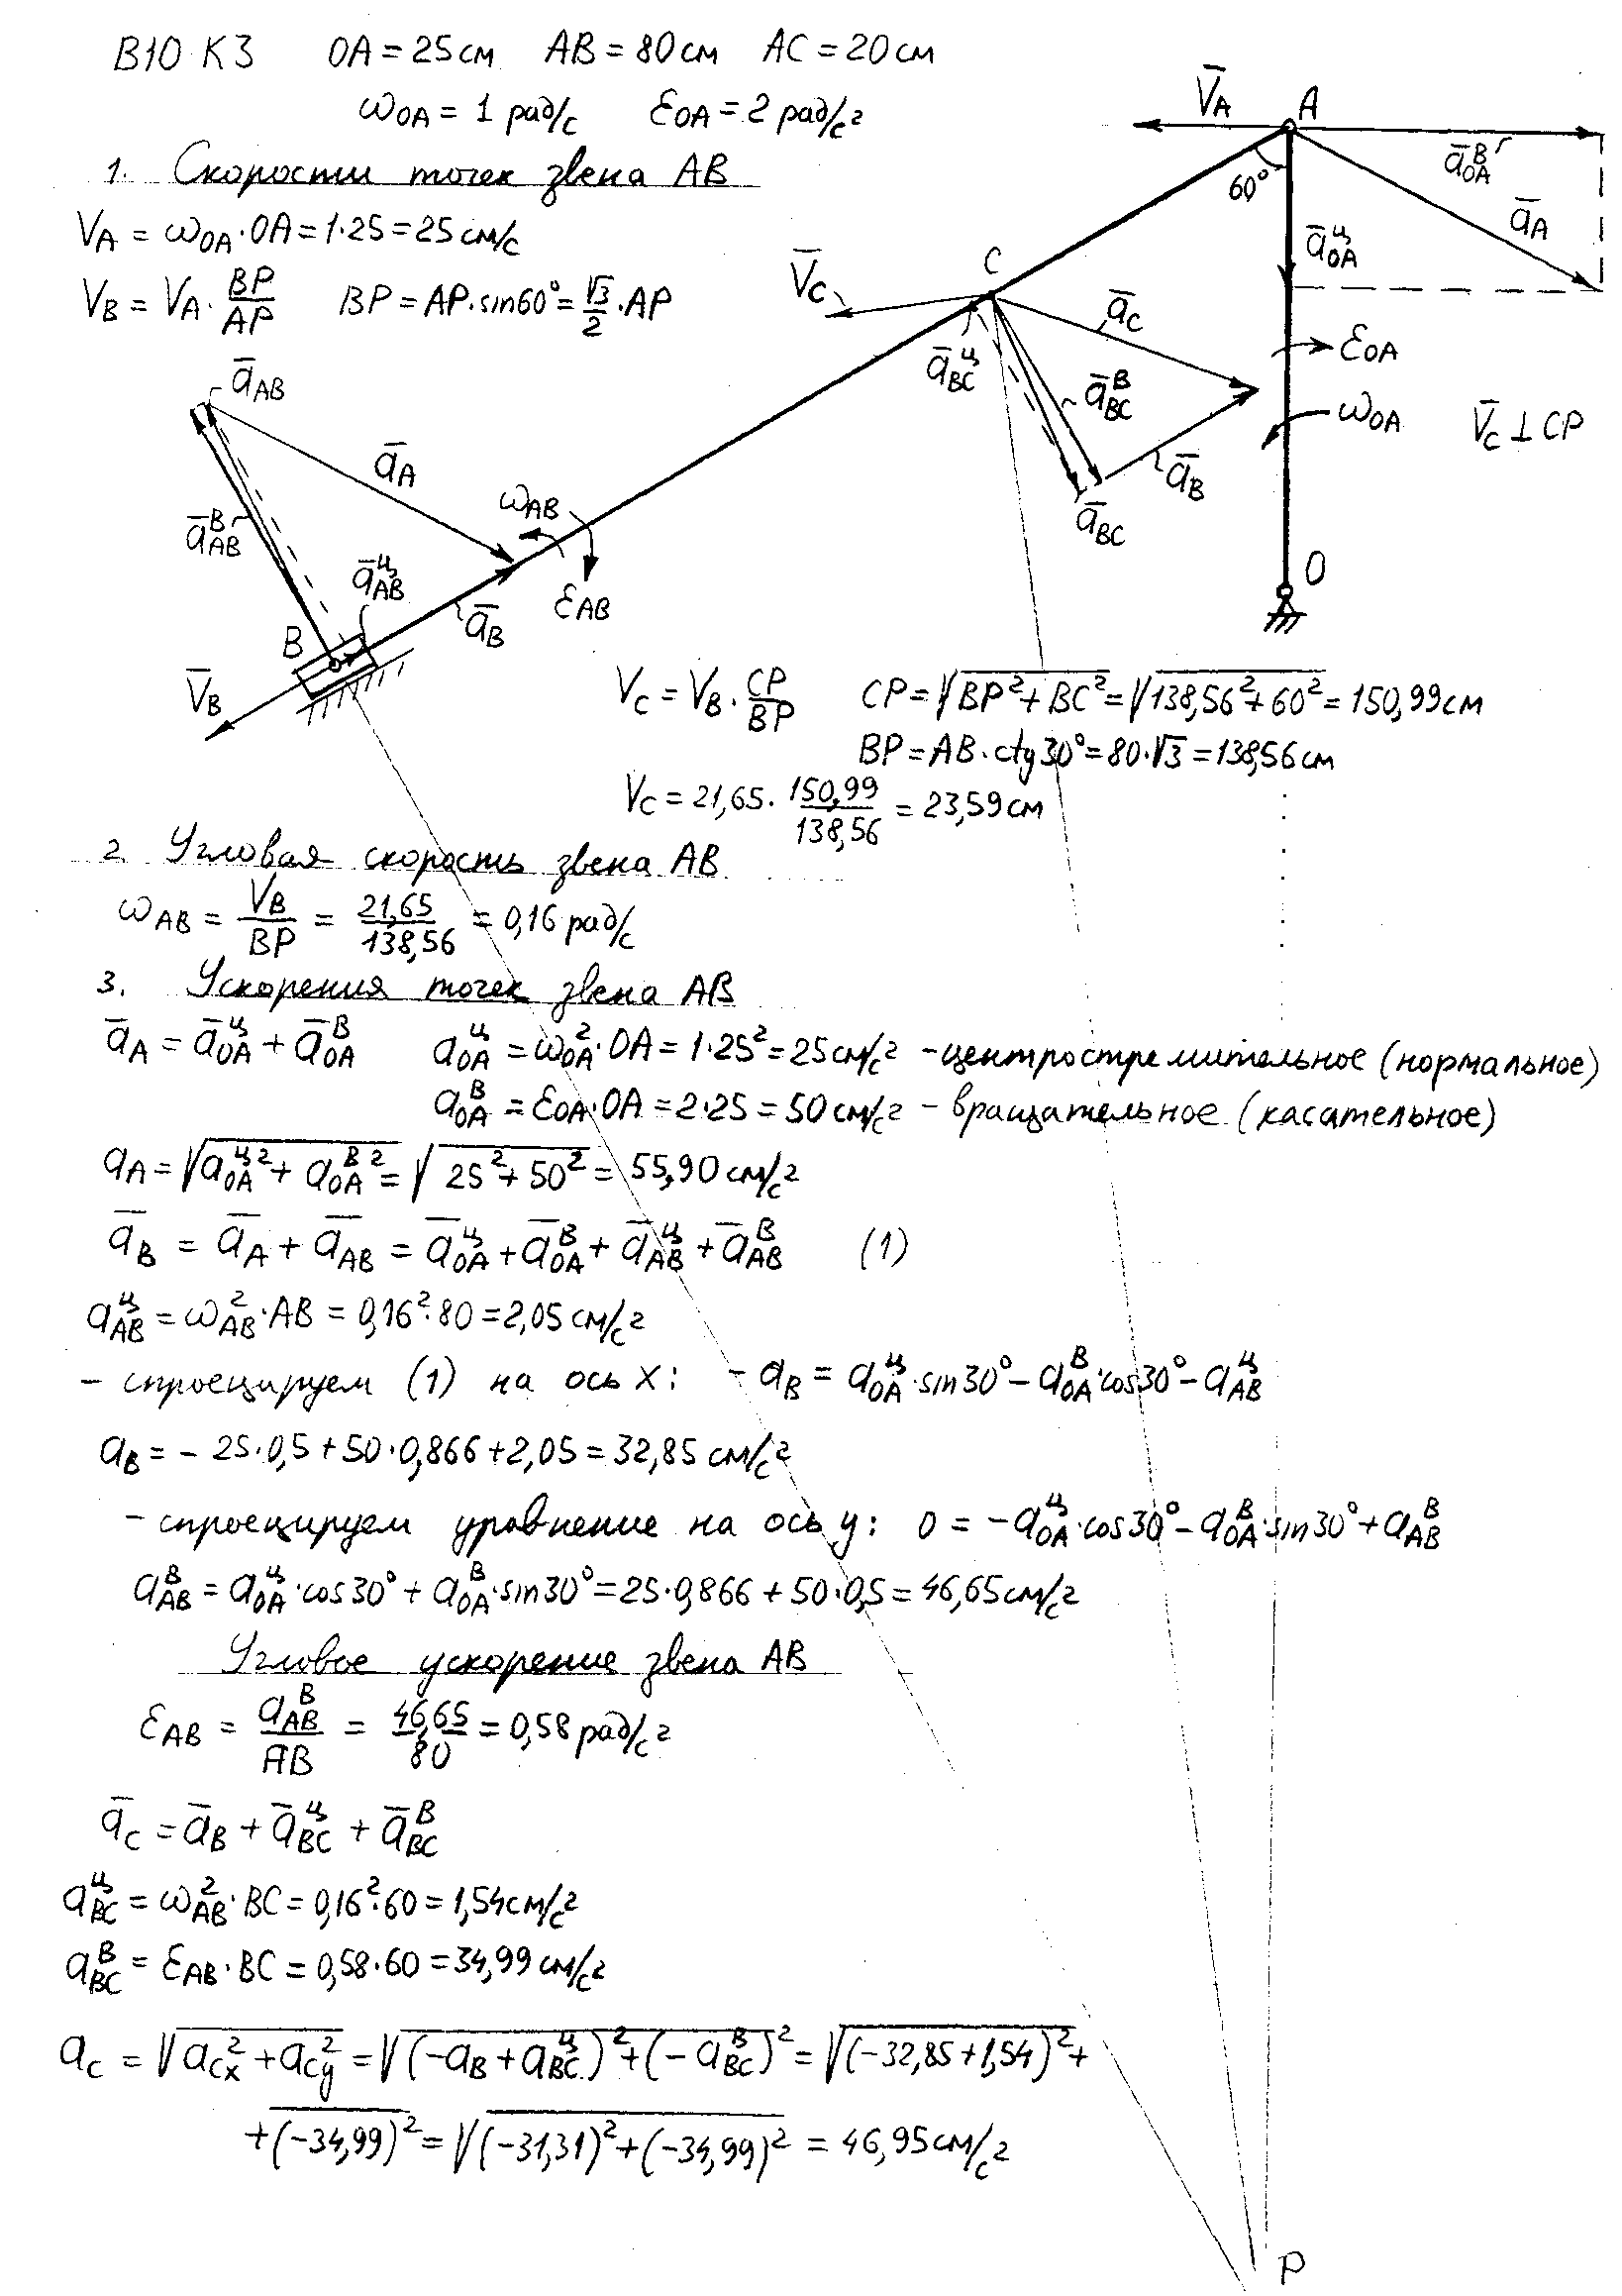 Задание механика 3. Теоретическая механика задачи с решением Яблонский с3. Теоретическая механика задач к3.26. Яблонский теоретическая механика задачи к1 к2 к3. Яблонский теоретическая механика 1985-2011.